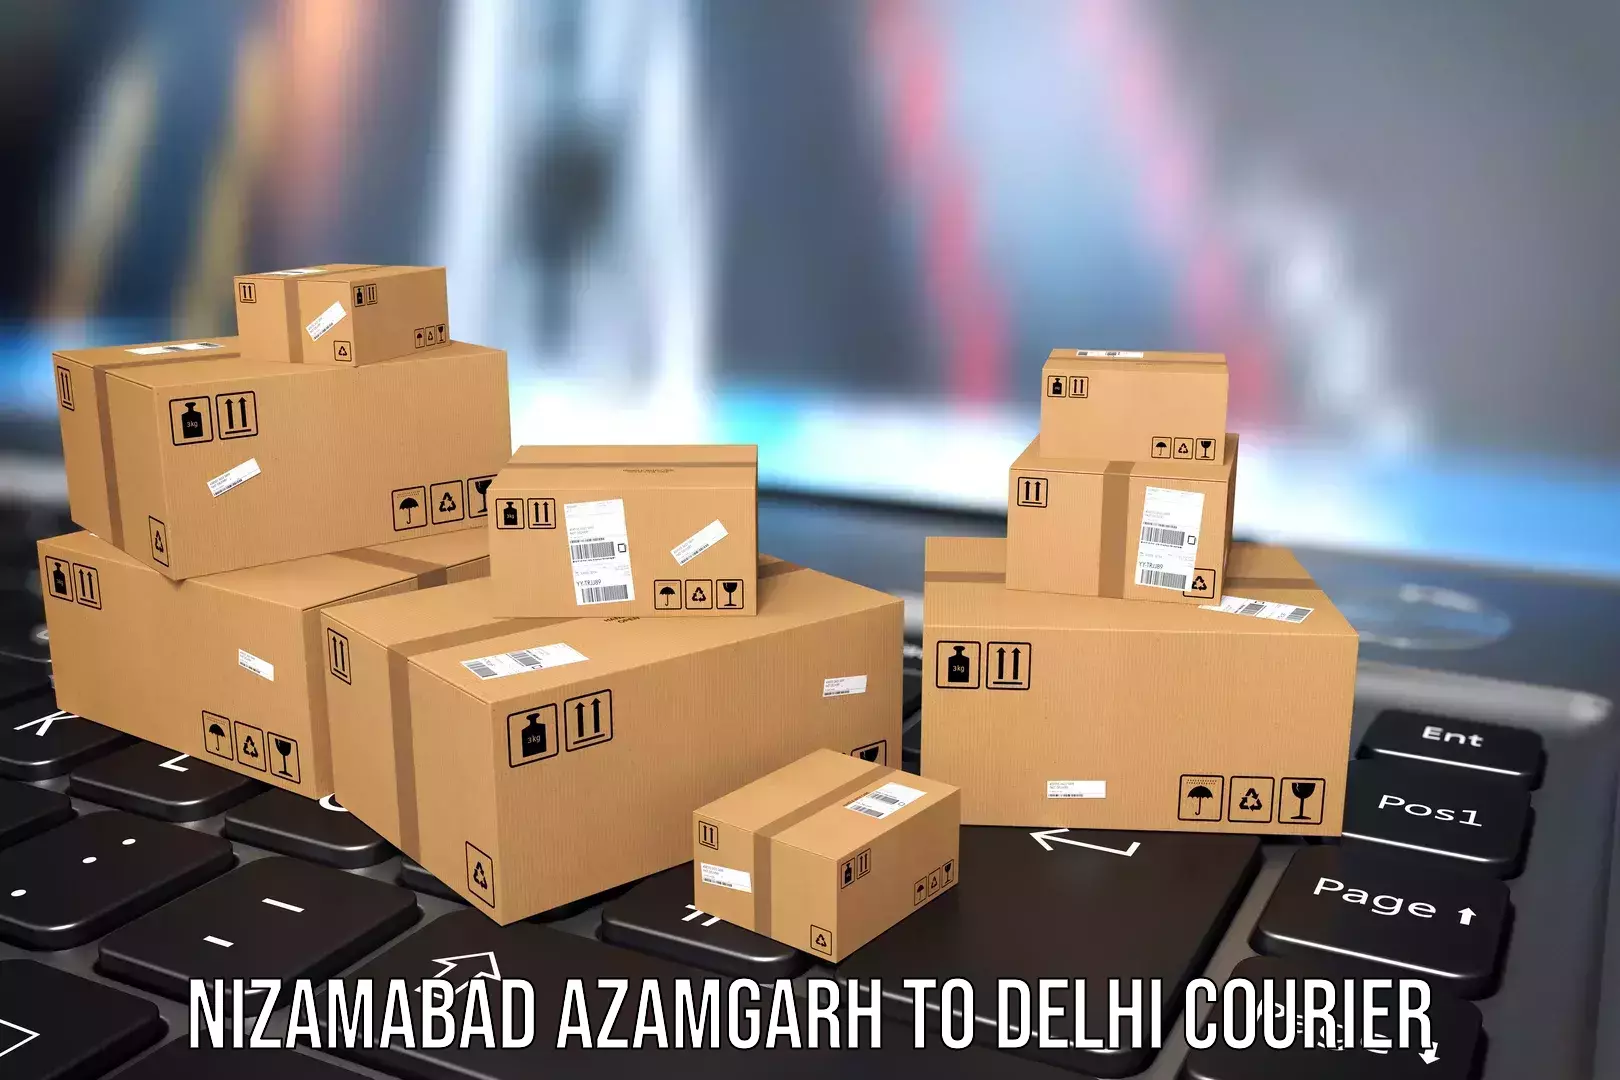 Baggage transport technology Nizamabad Azamgarh to Lodhi Road